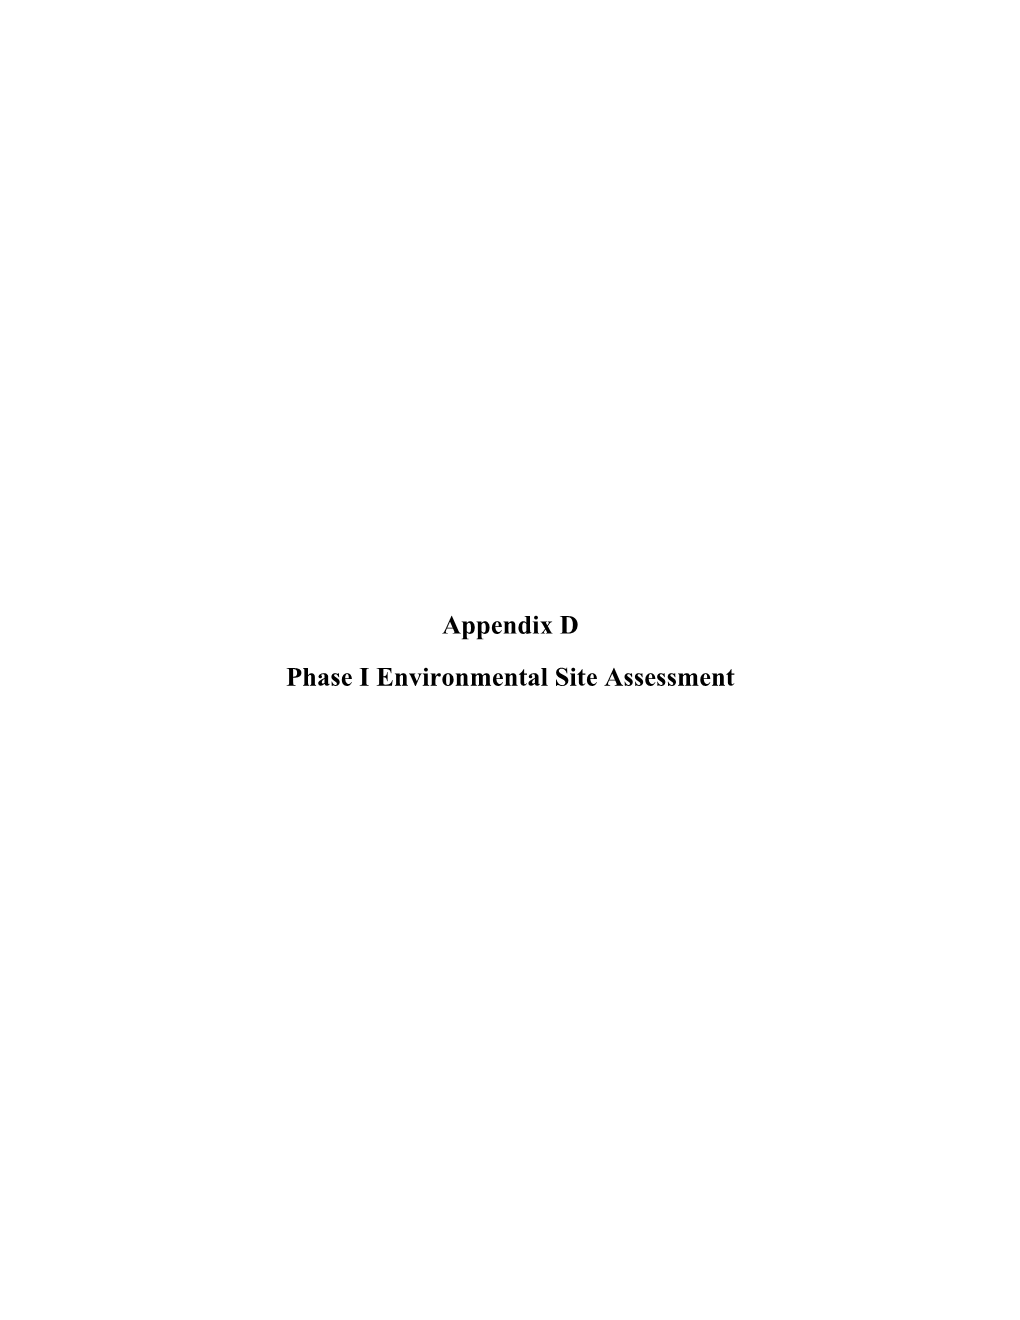 Appendix D Phase I Environmental Site Assessment February 28, 2020